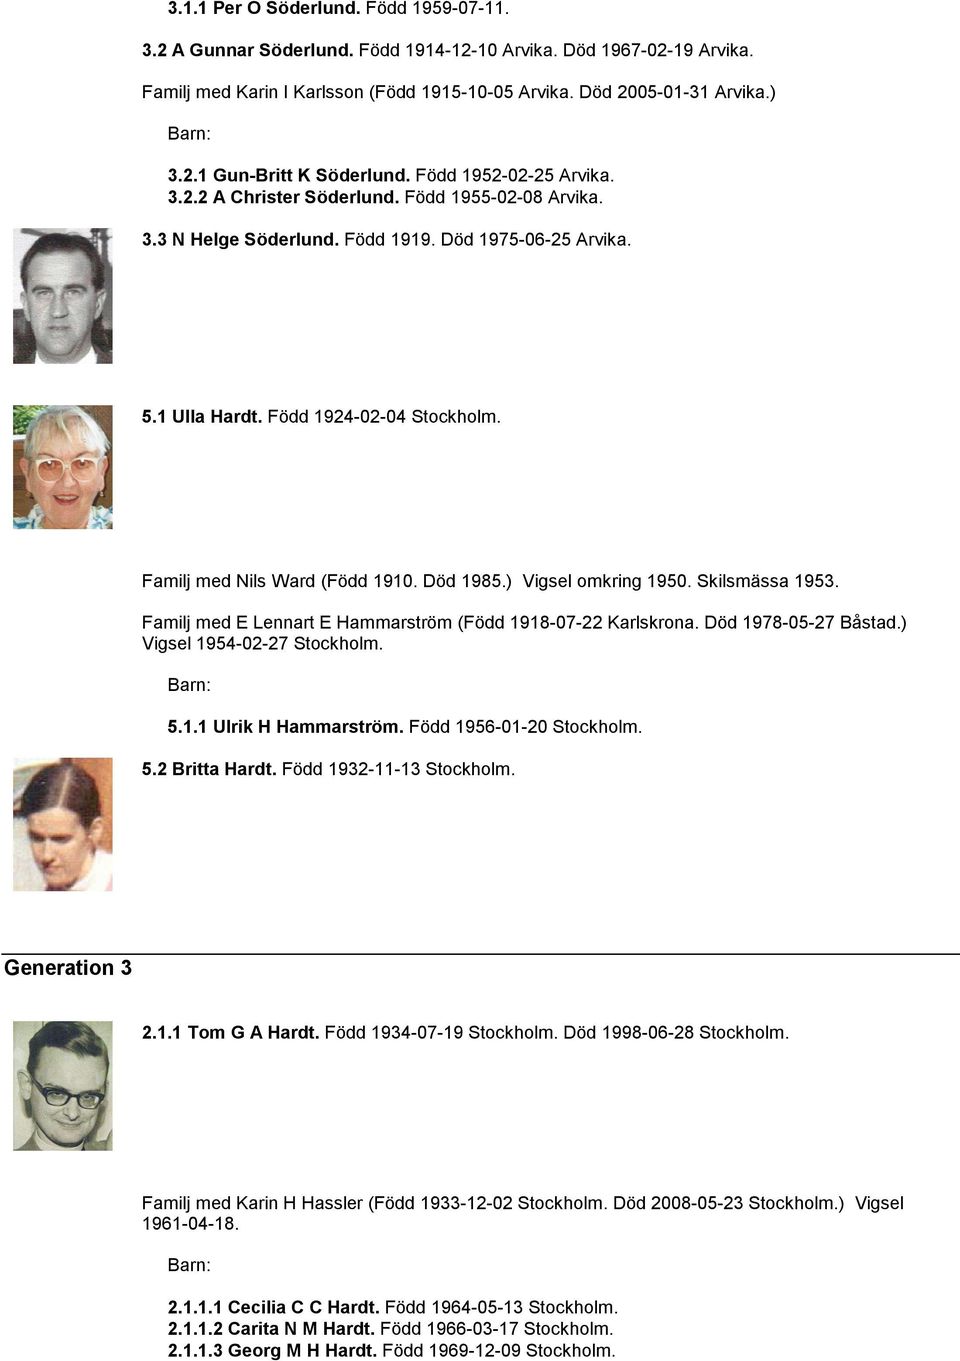 Familj med Nils Ward (Född 1910. Död 1985.) Vigsel omkring 1950. Skilsmässa 1953. Familj med E Lennart E Hammarström (Född 1918-07-22 Karlskrona. Död 1978-05-27 Båstad.) Vigsel 1954-02-27 Stockholm.